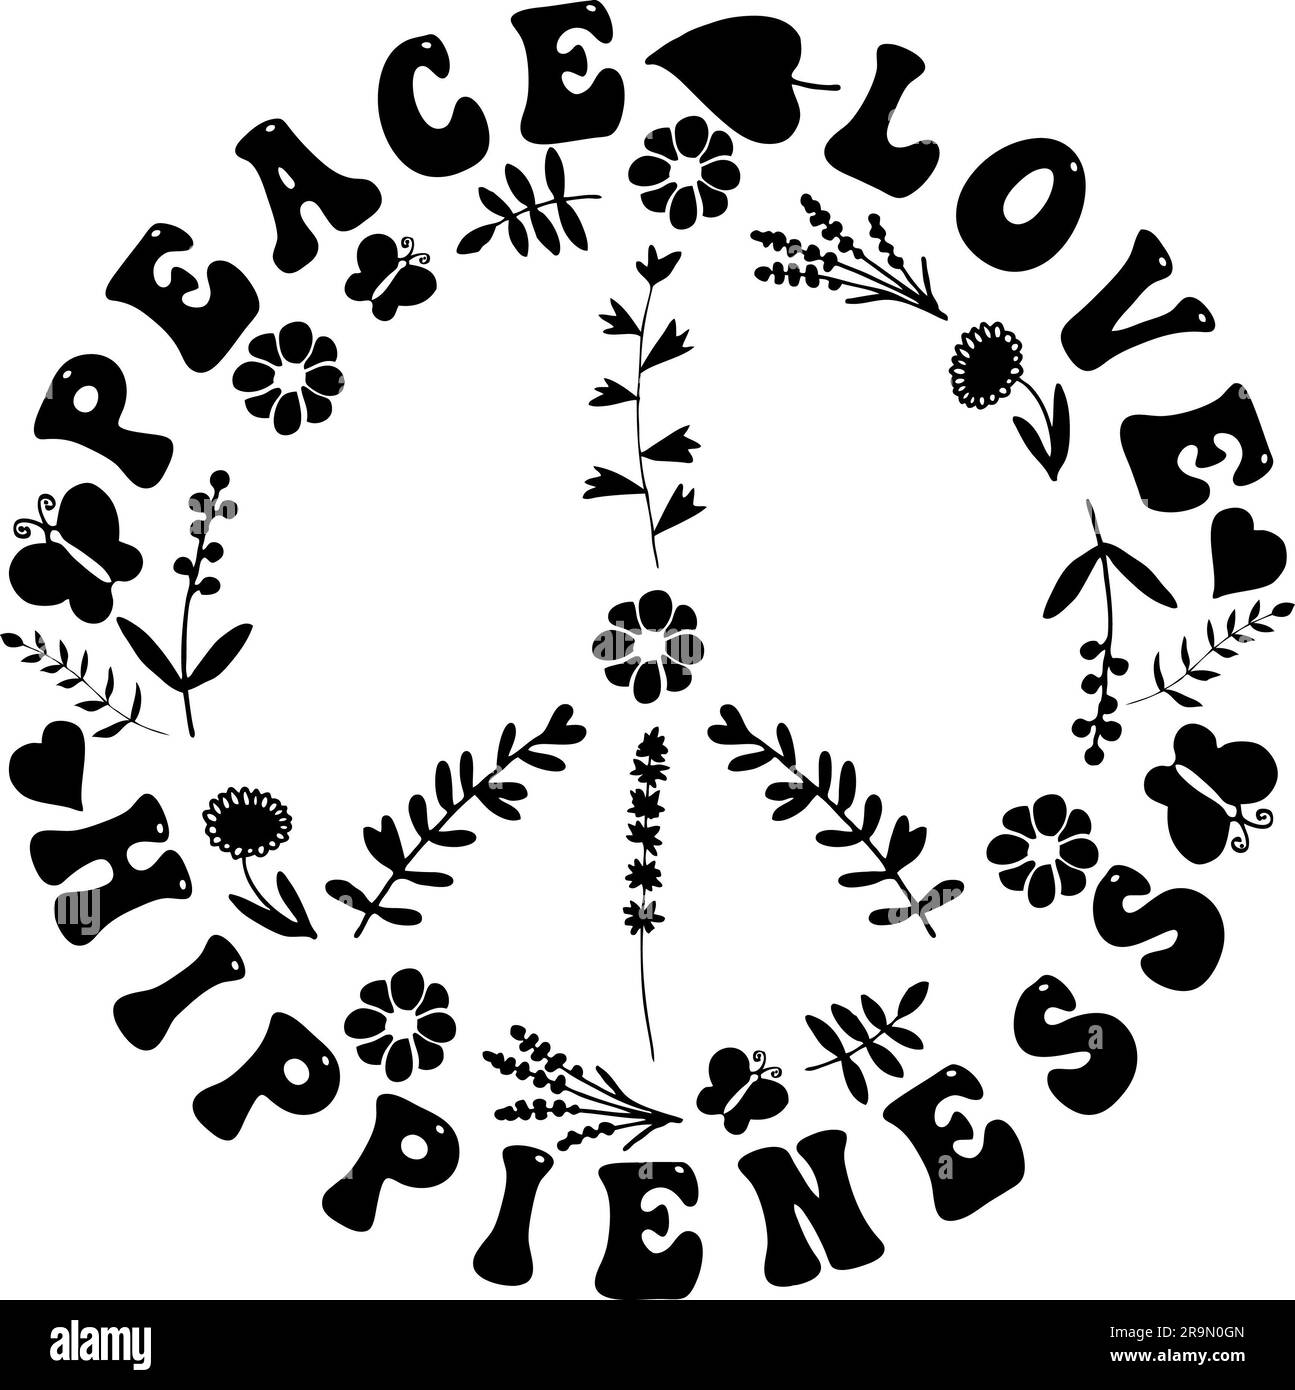 Pace amore Hippieness - segno di pace Hippie nero carino Foto Stock